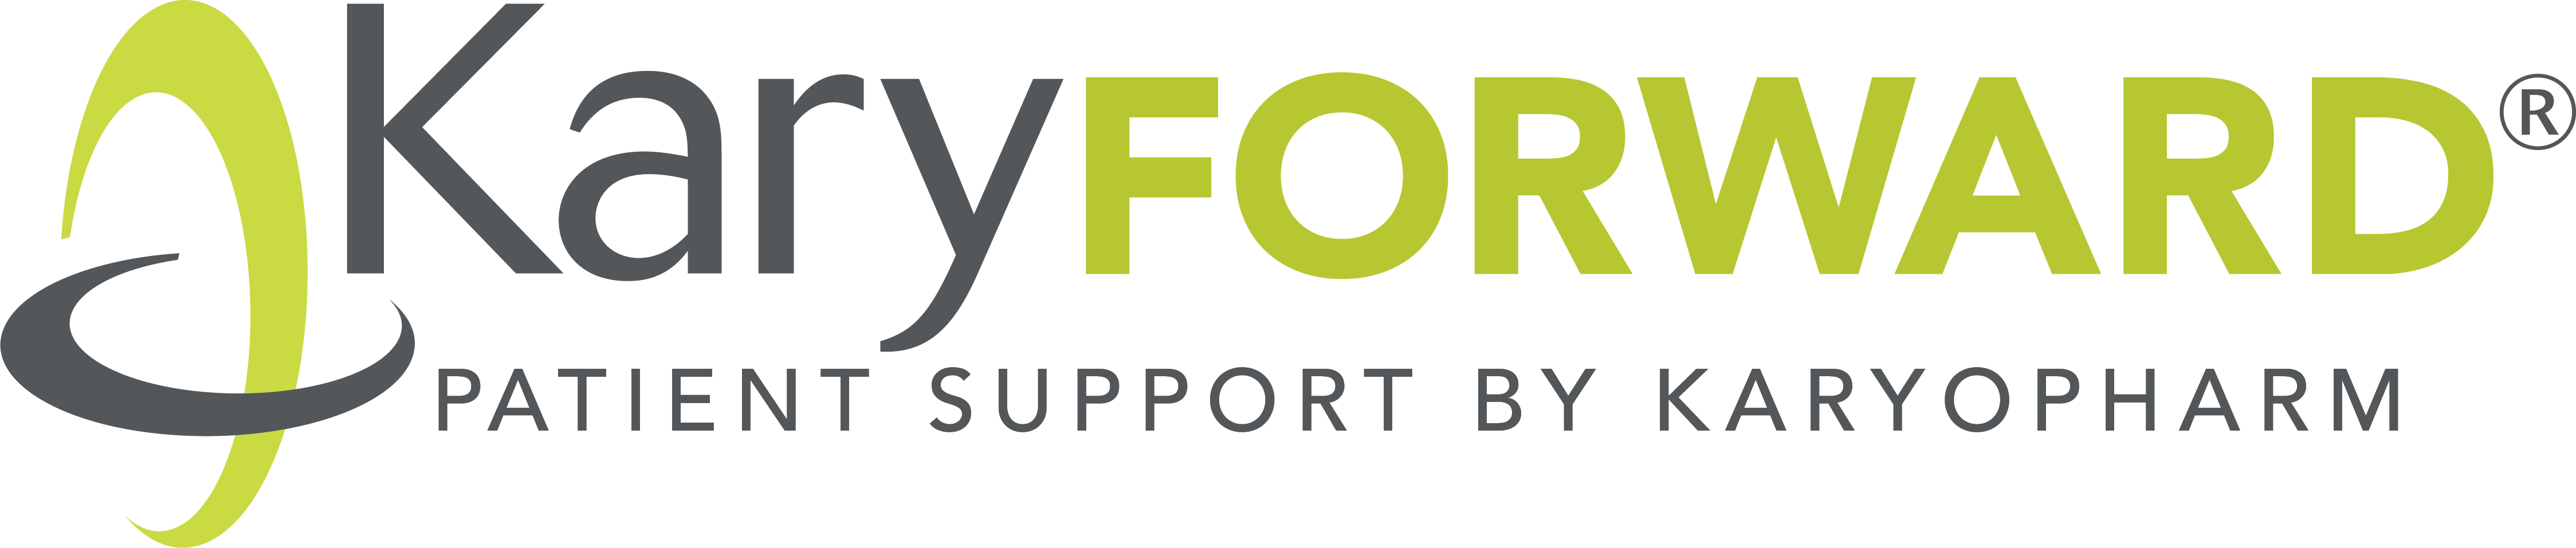 Karyforward logo